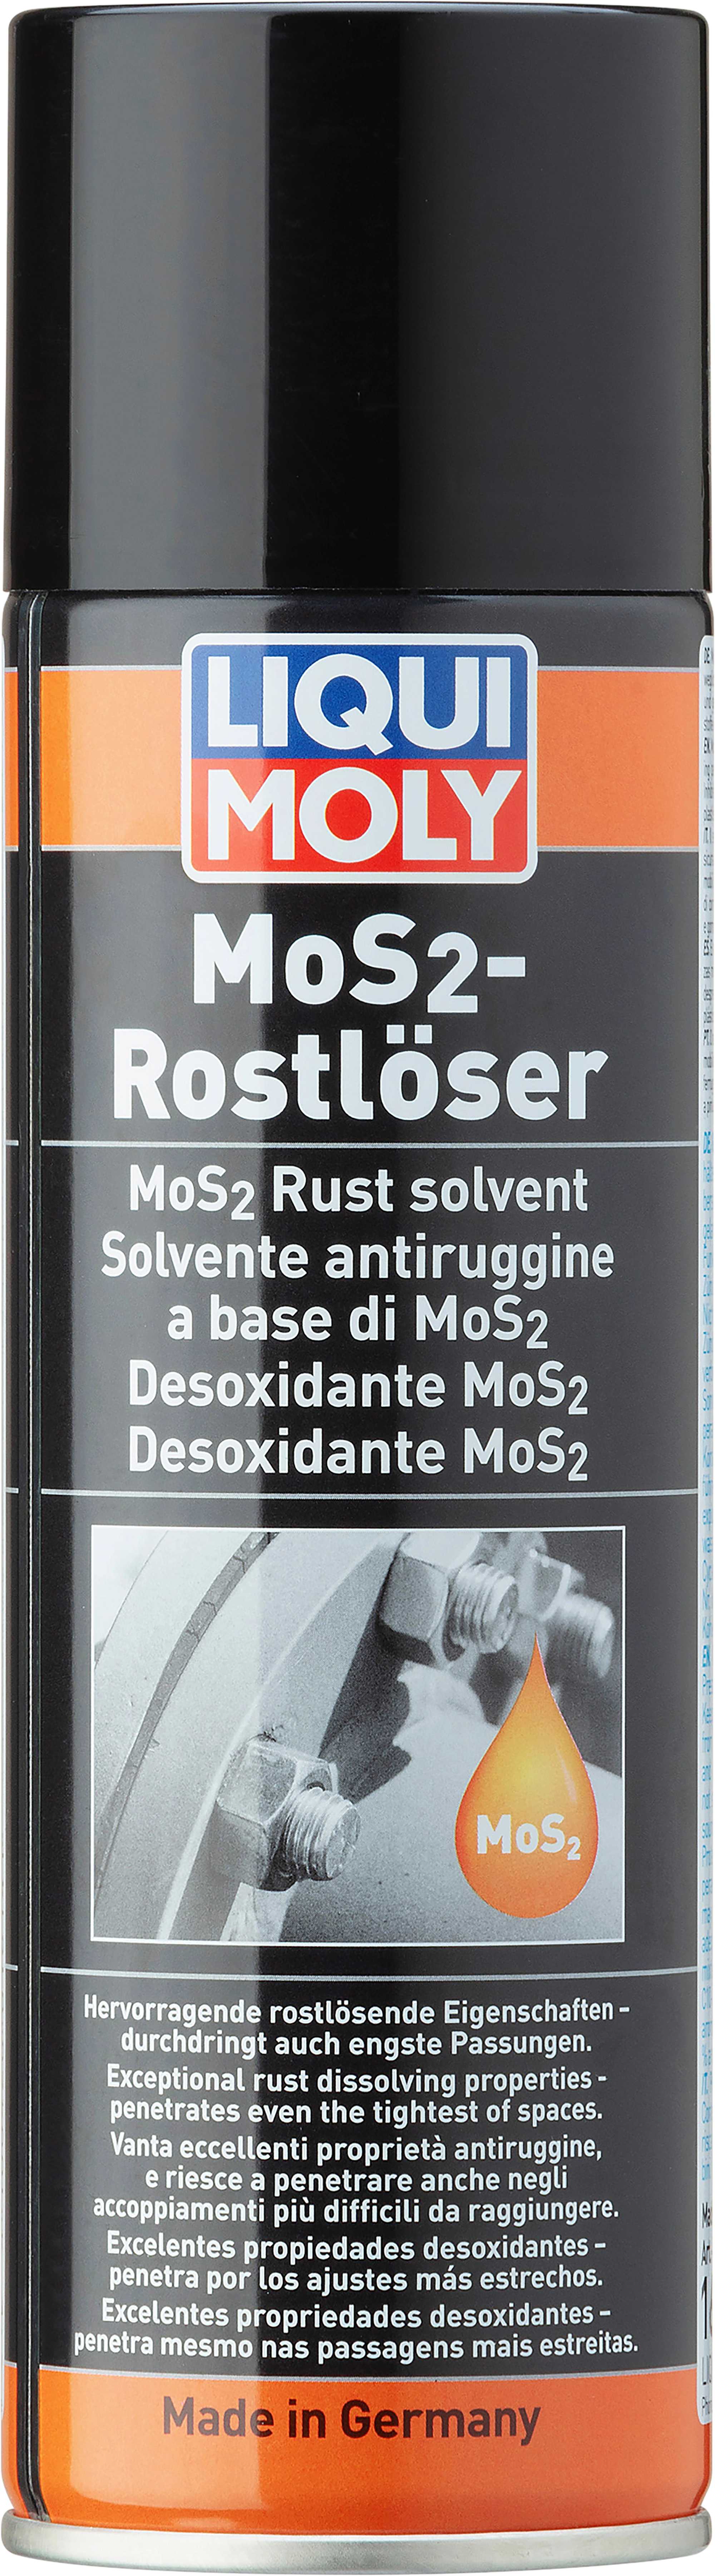 Liqui Moly Rostlöser mit MoS2 300 ml kaufen bei OBI